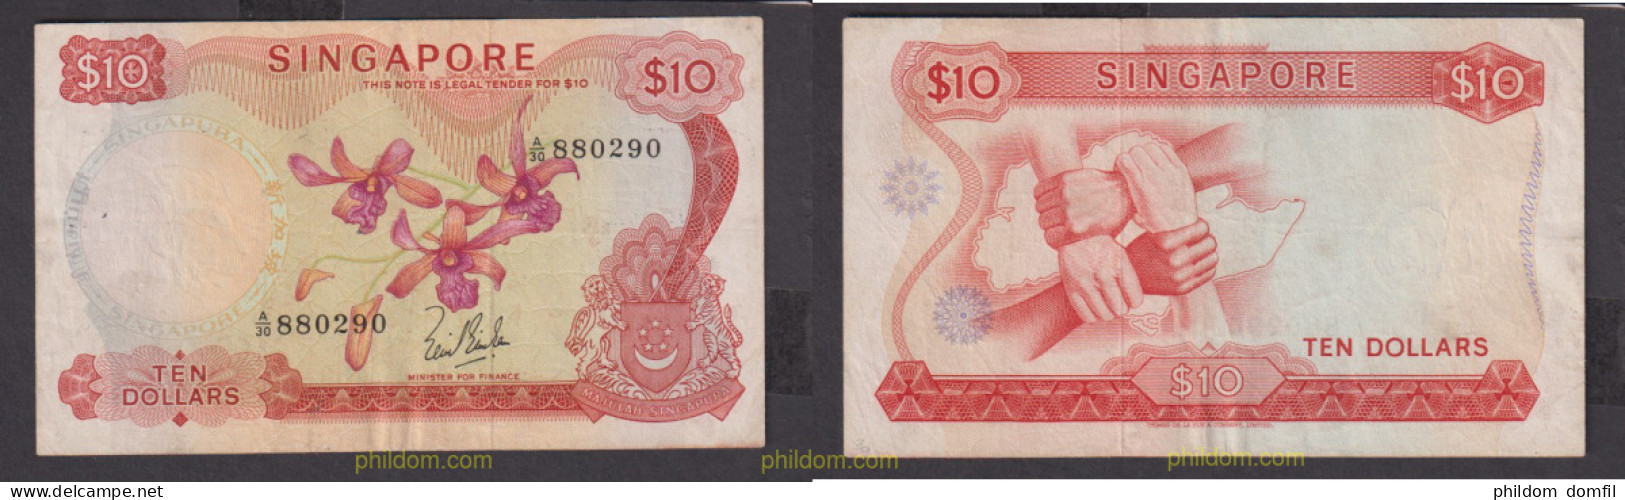 2401 SINGAPUR 1967 10 DOLLARS SINGAPORE 1967 - Singapore